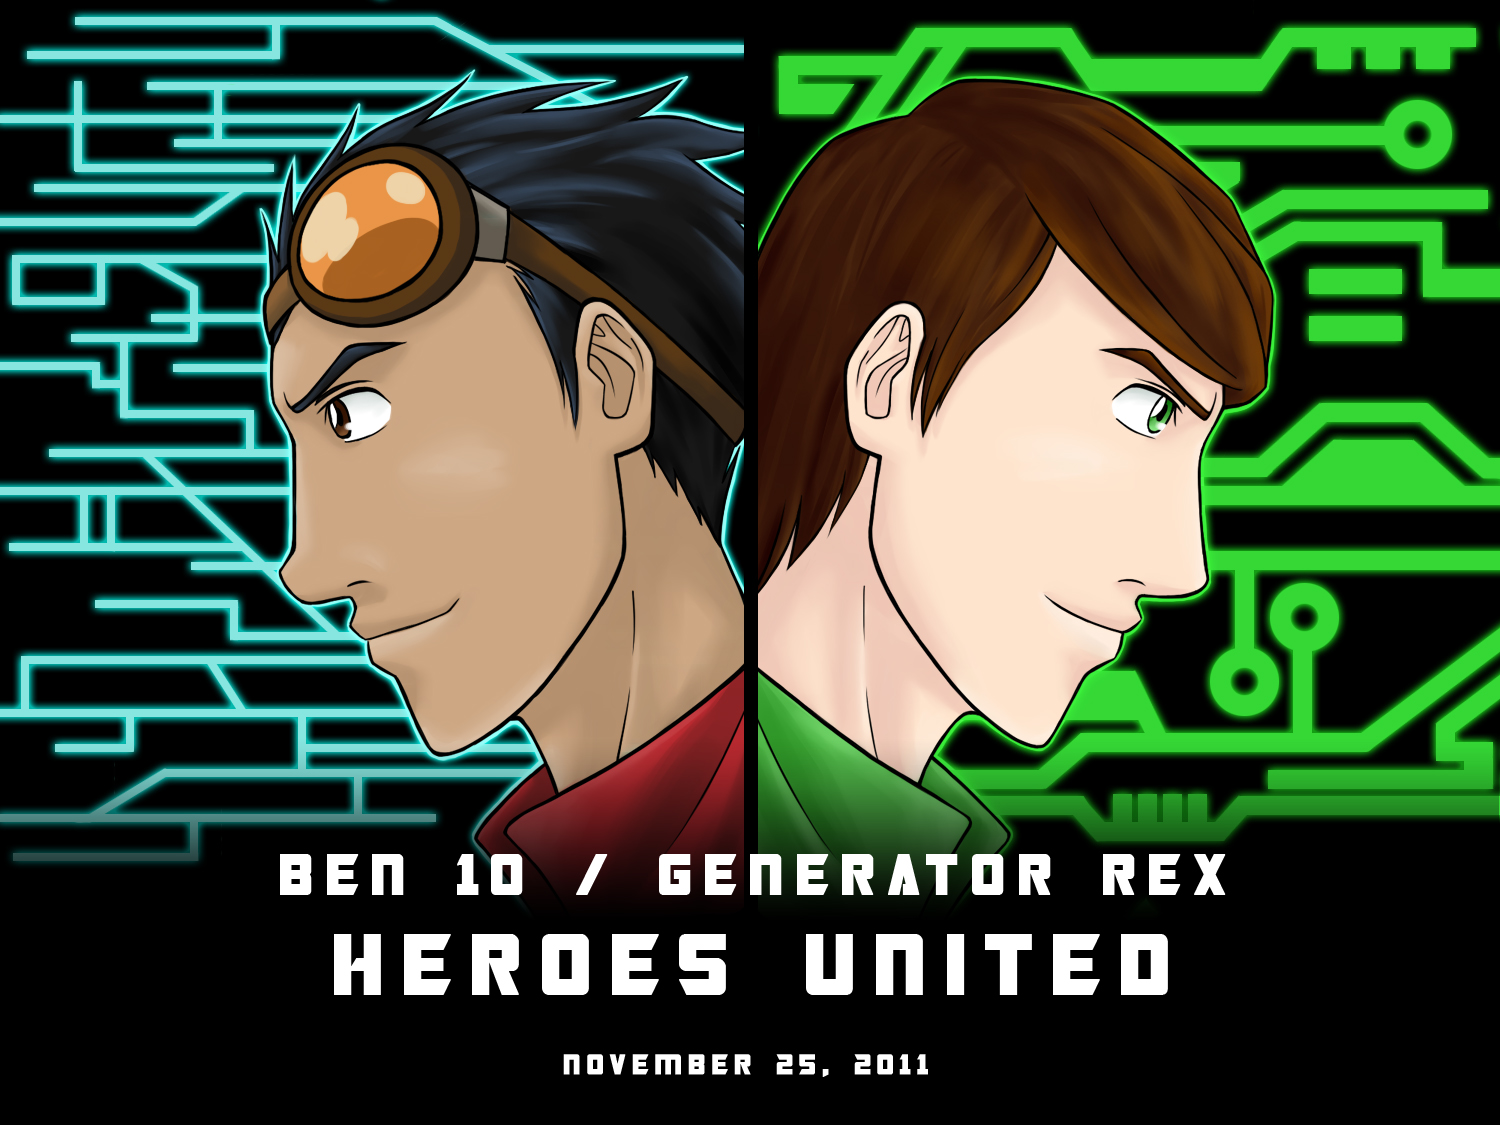 Heroes United Ben10 x generator rex _ _ _ @thatboy_studio #ben